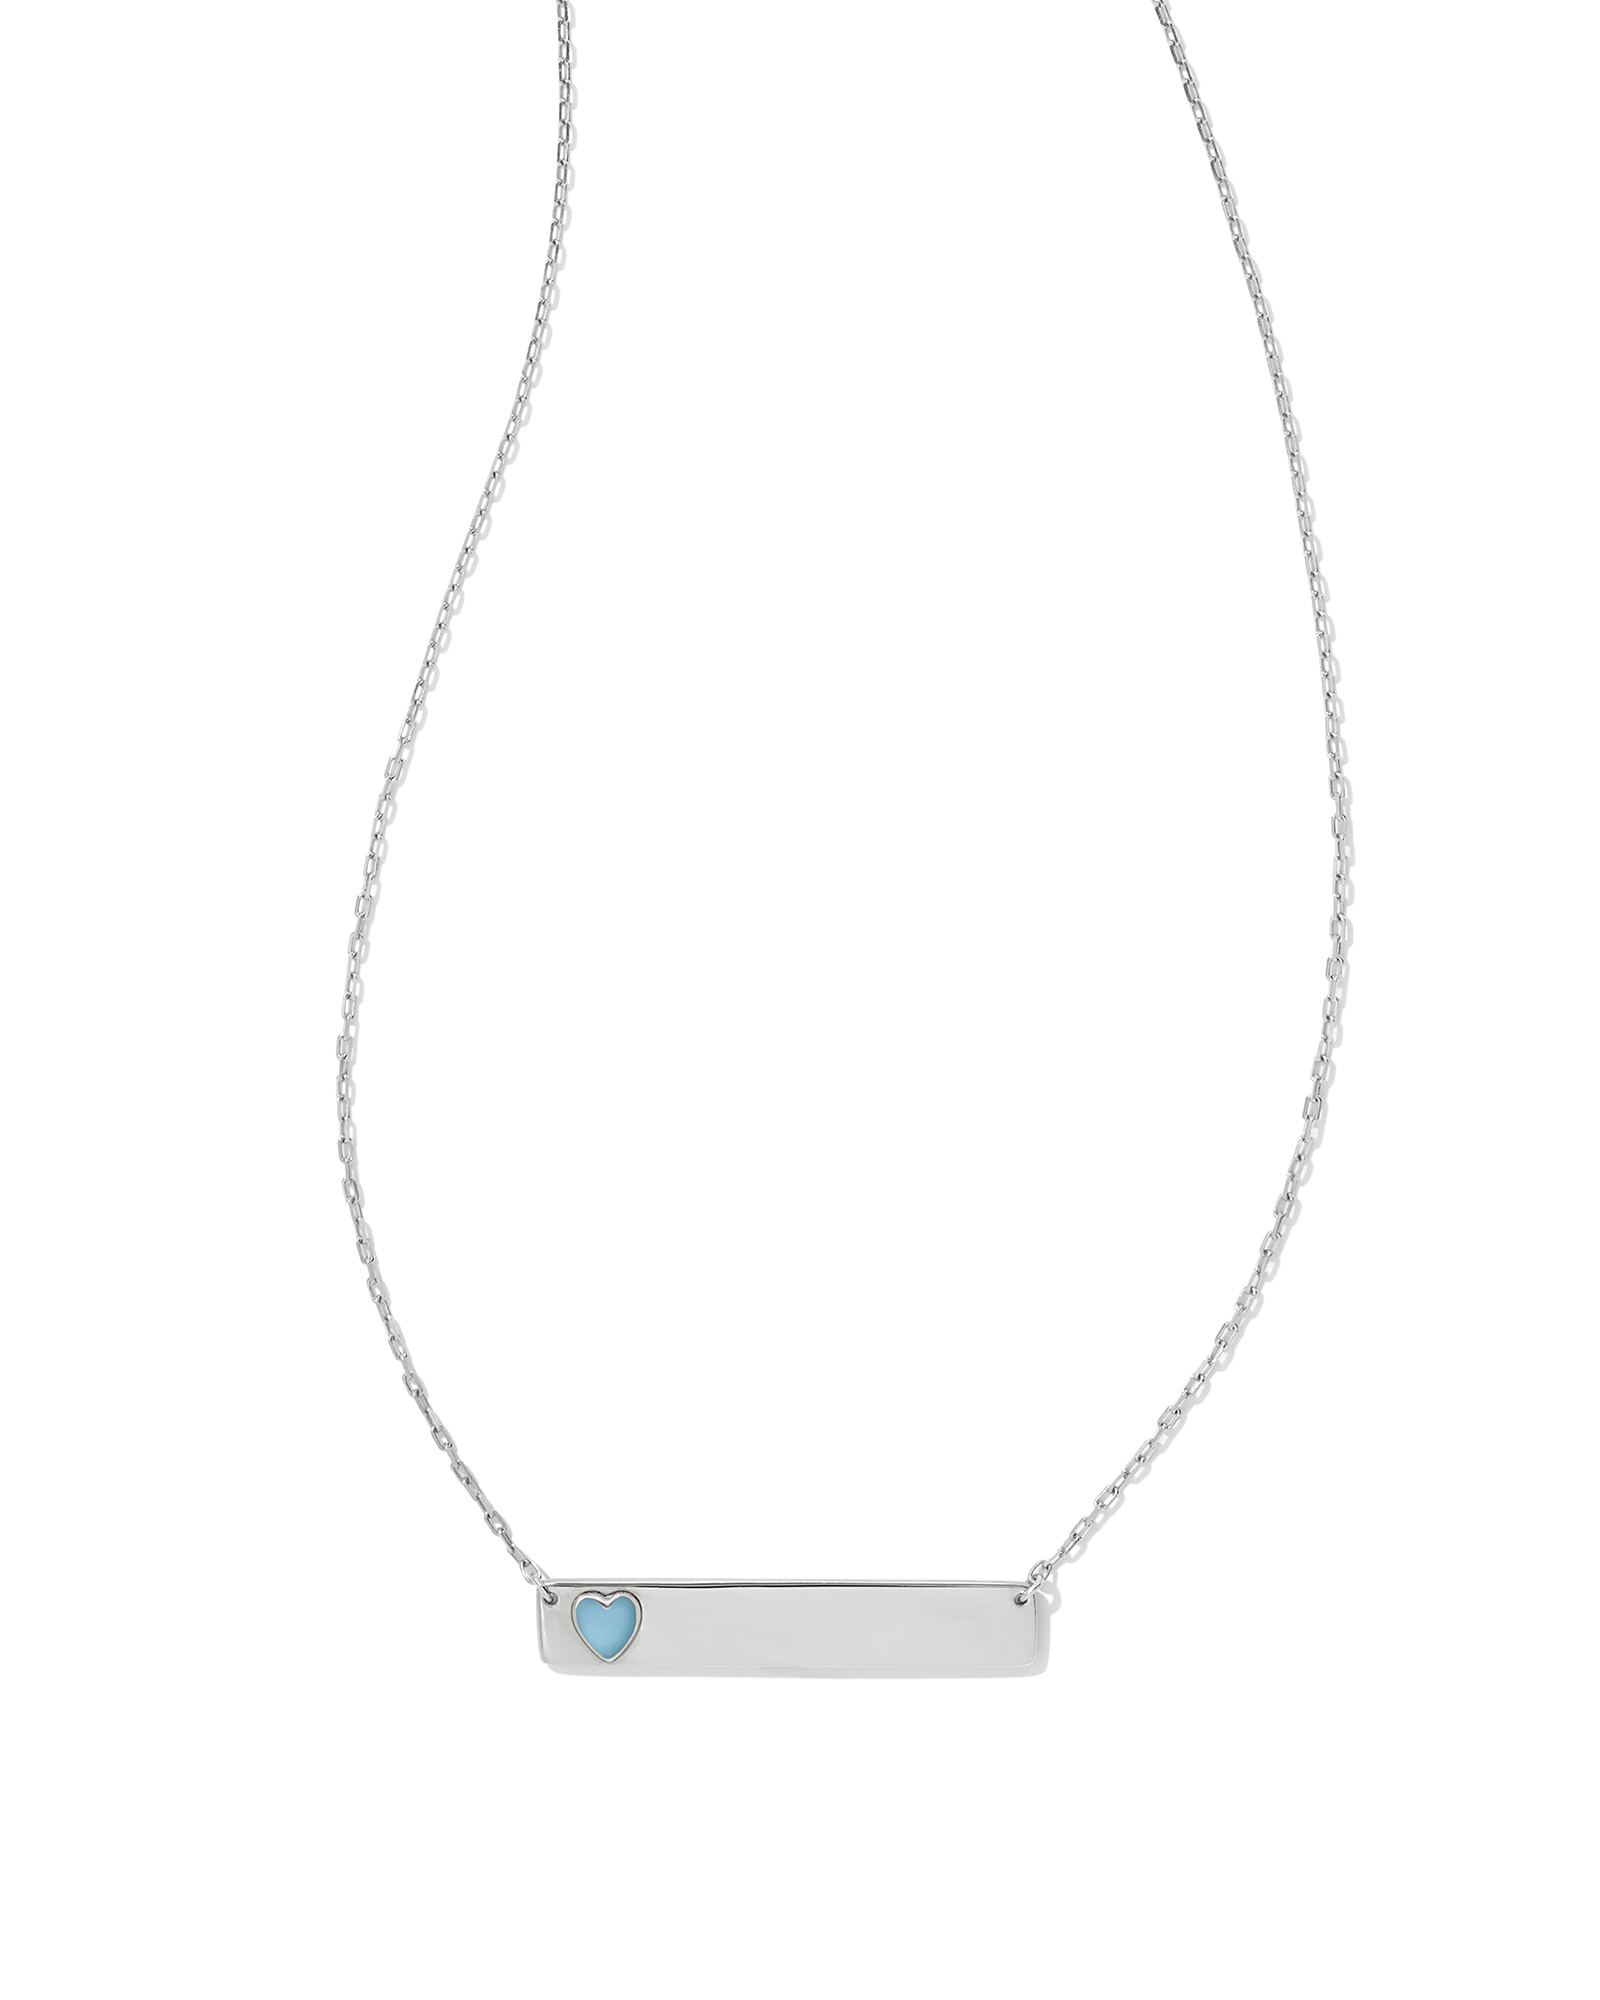 Allison Sterling Silver Enamel Heart Pendant Necklace in Blue | Kendra ...